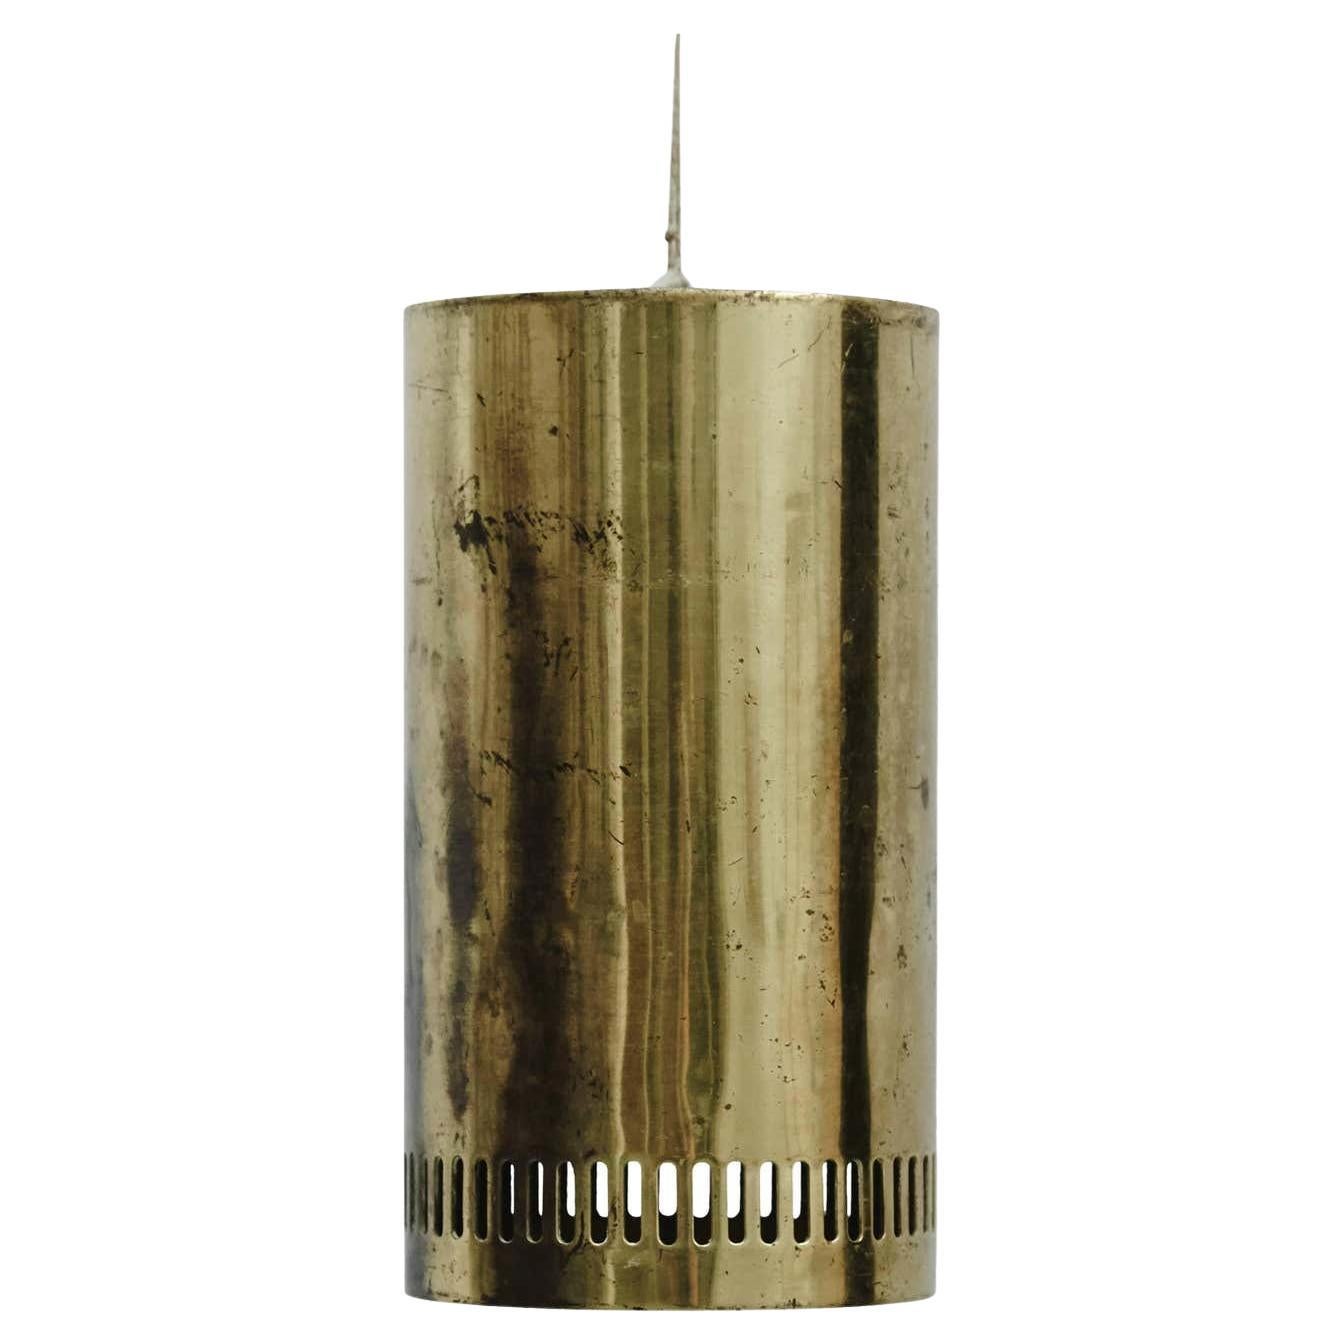 Lampe suspendue dans le style d'Alvar Aalto, vers 1935